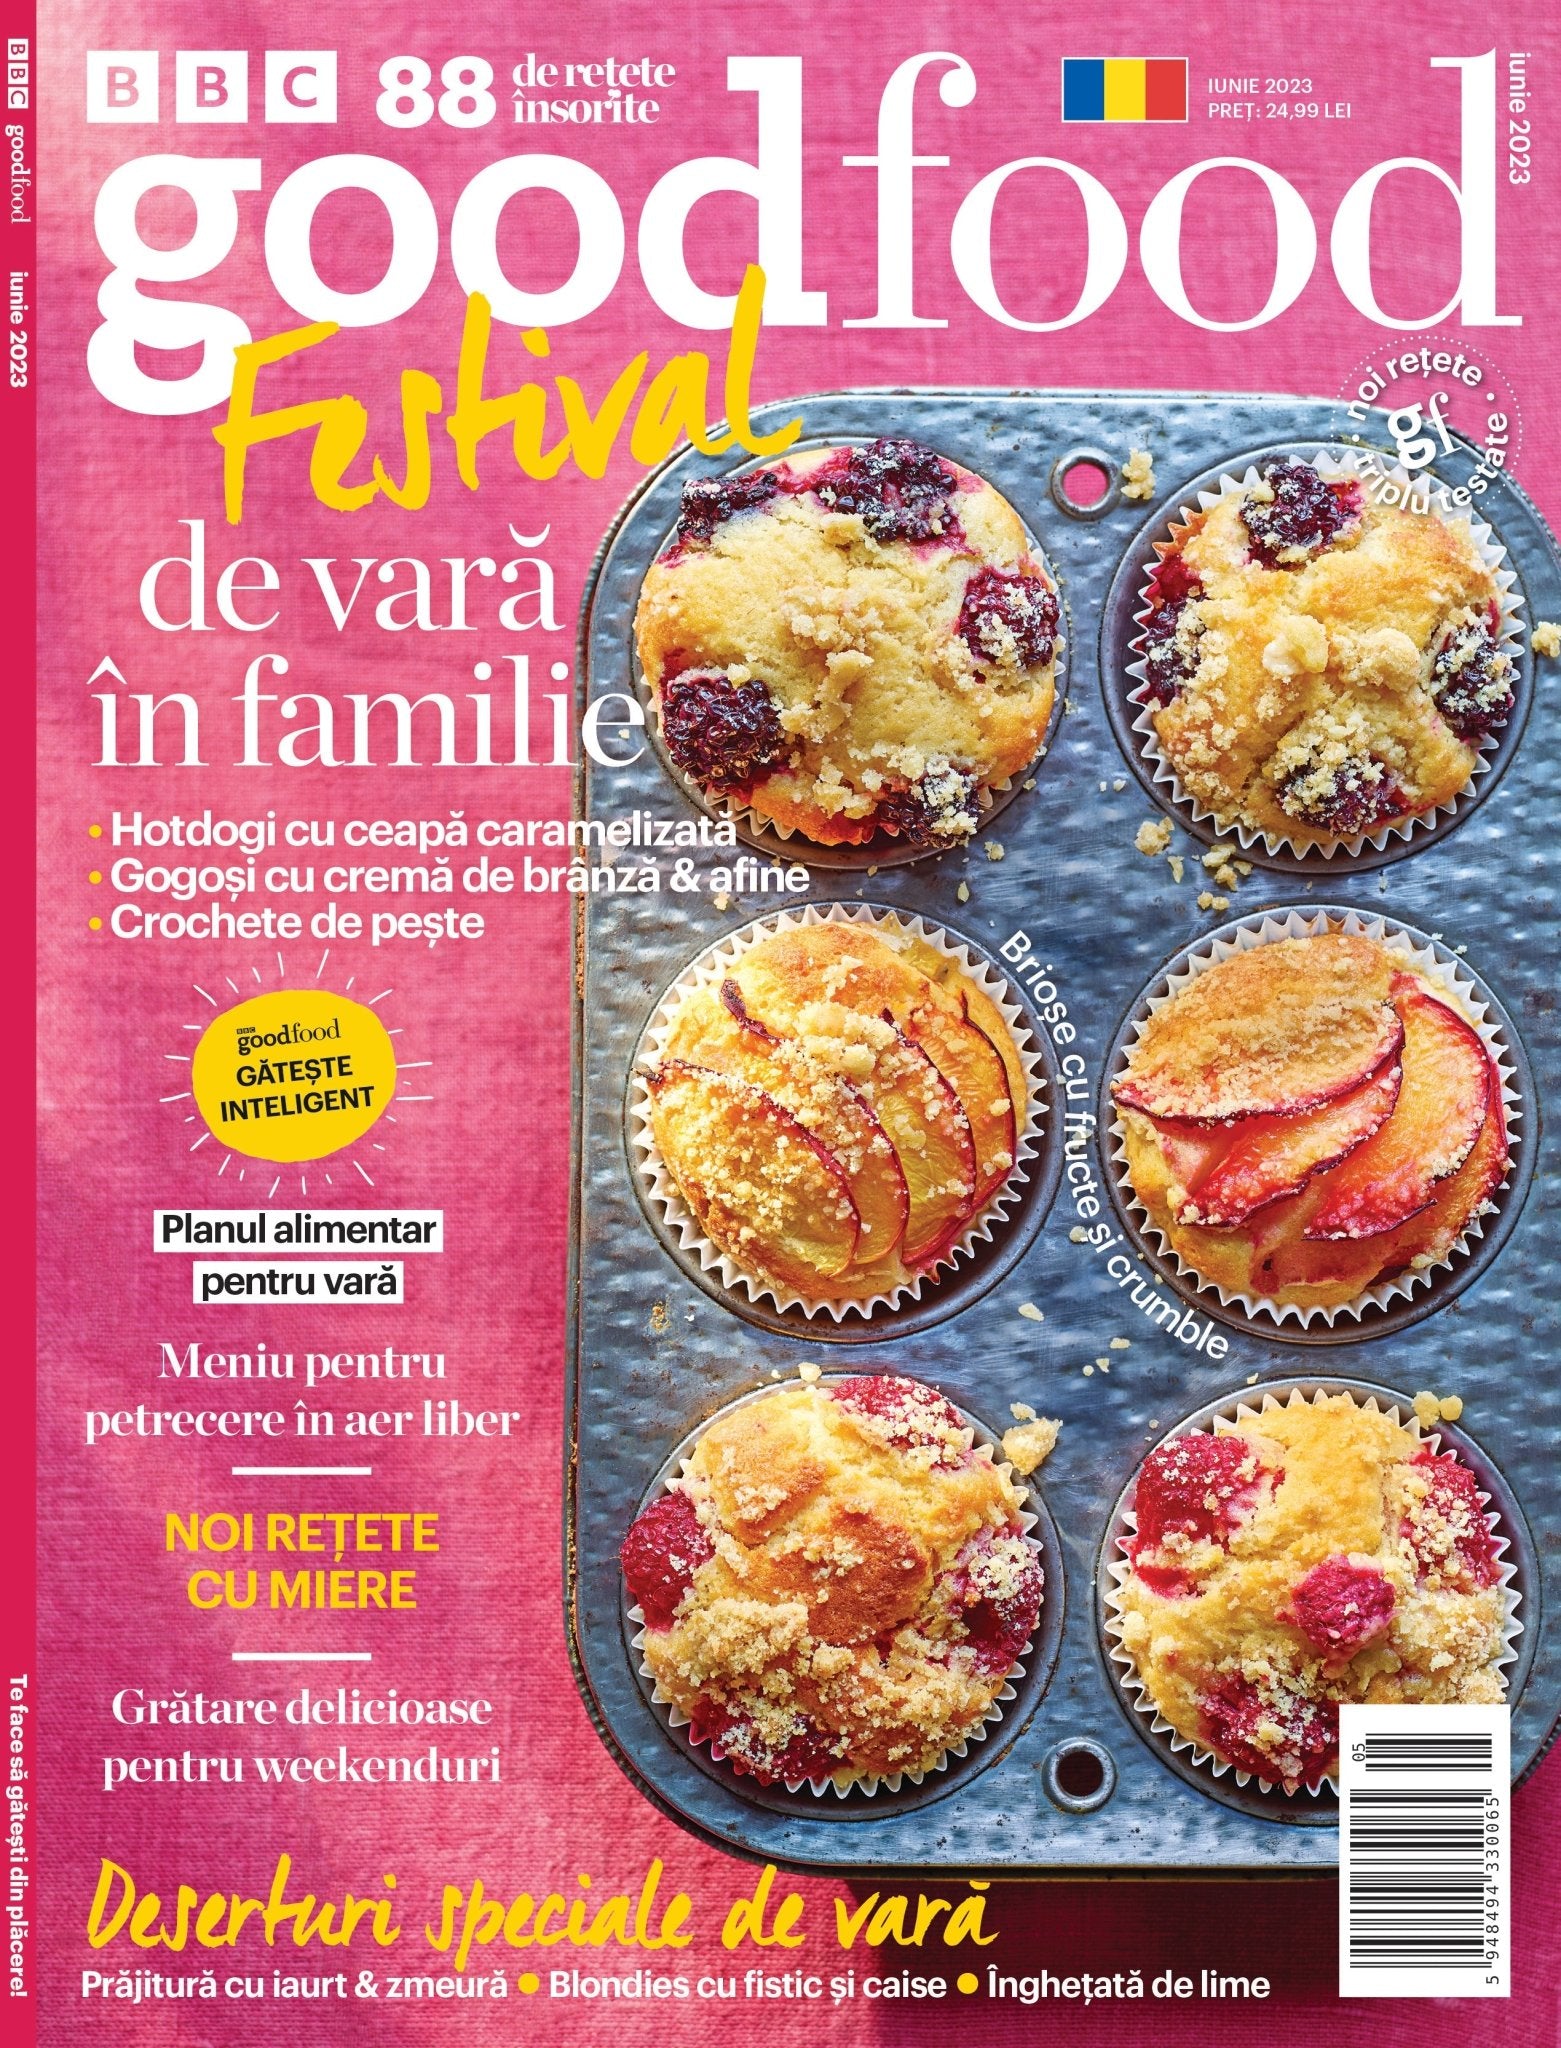 BBC Good Food iunie 2023 - Publisol.ro